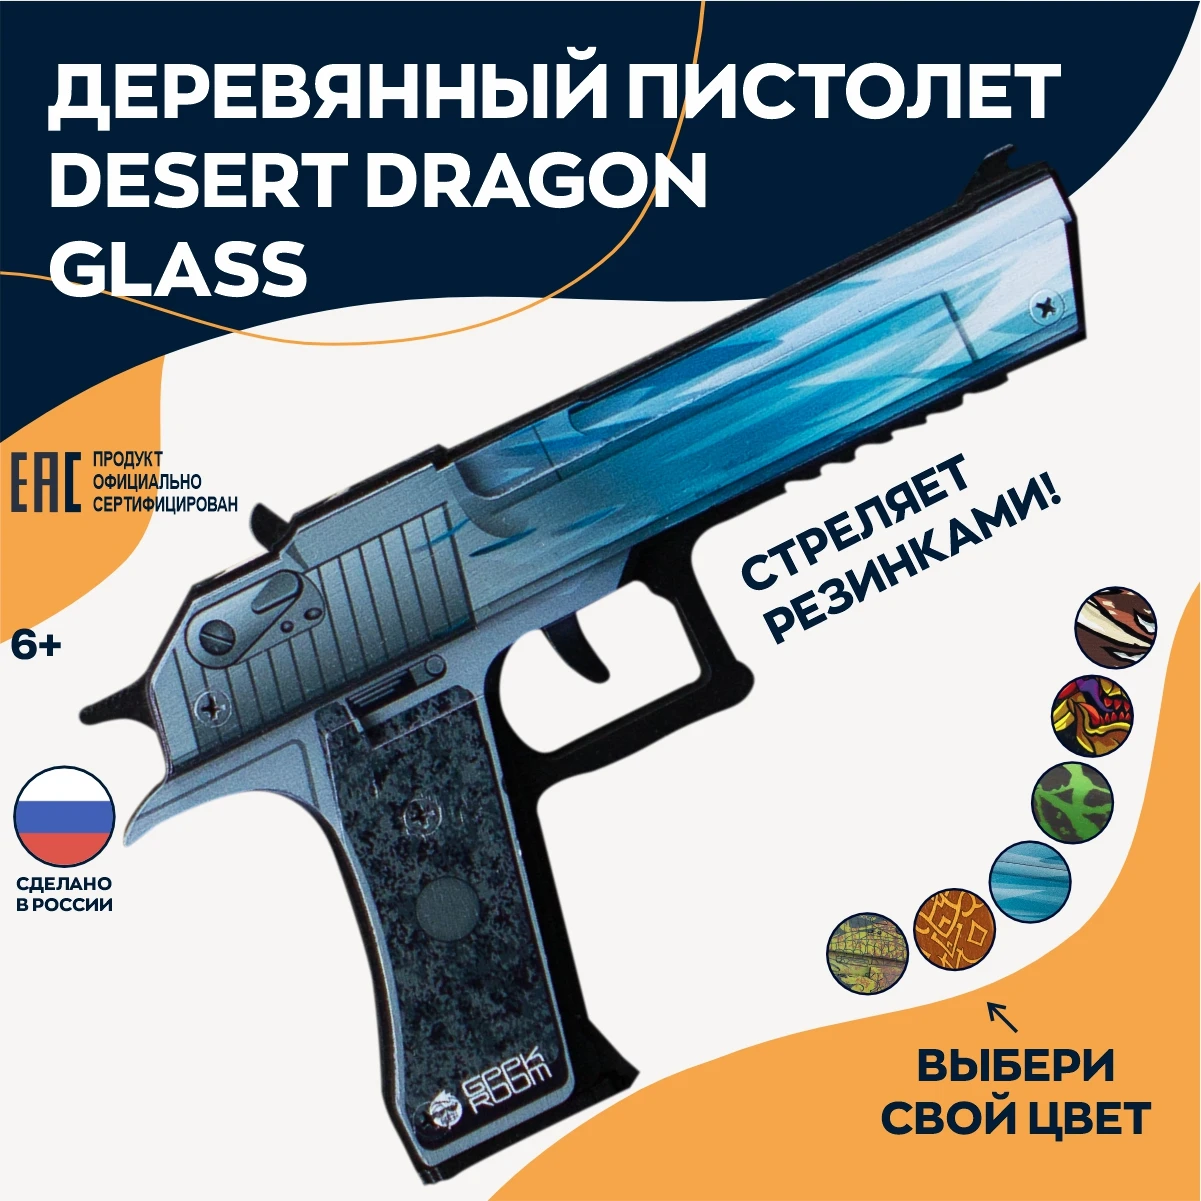 Игрушечное оружие Standoff 2 пистолет desert eagle Dragon glass Geekroom,  резинкострел, детский, дигл, деревянный | AliExpress